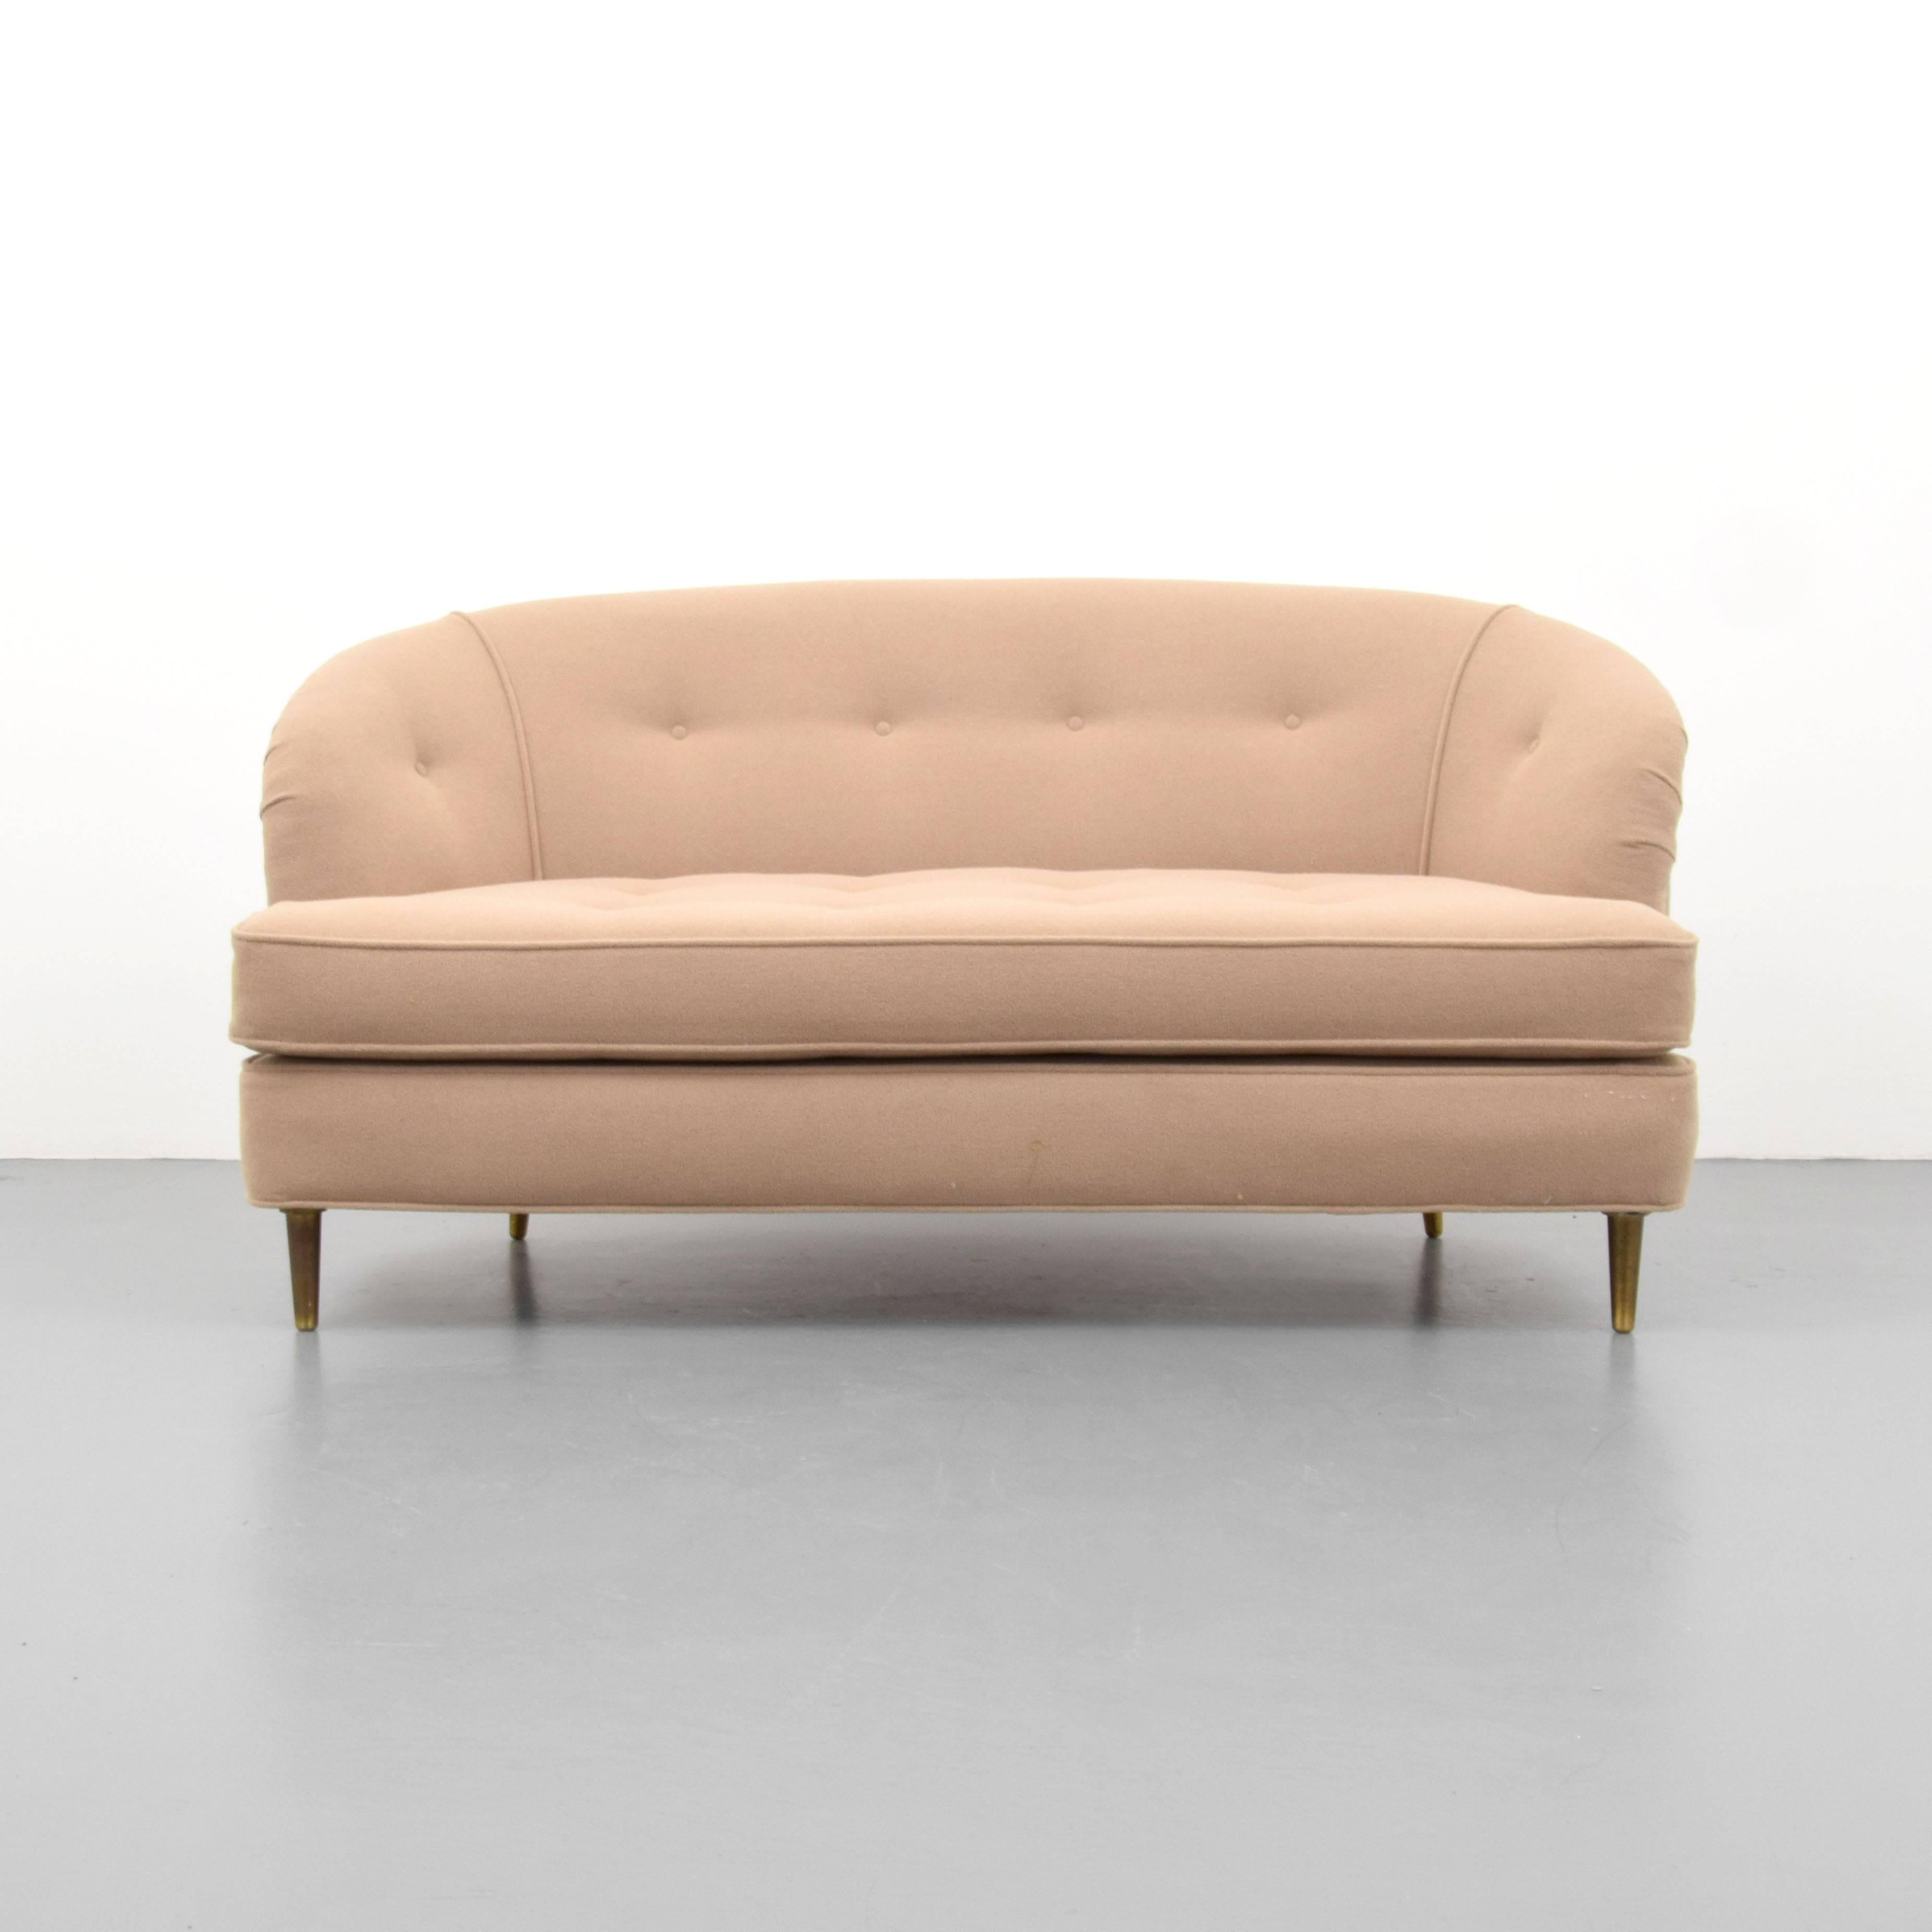 Sofa/loveseat, model #5406, by Edward Wormley for Dunbar.